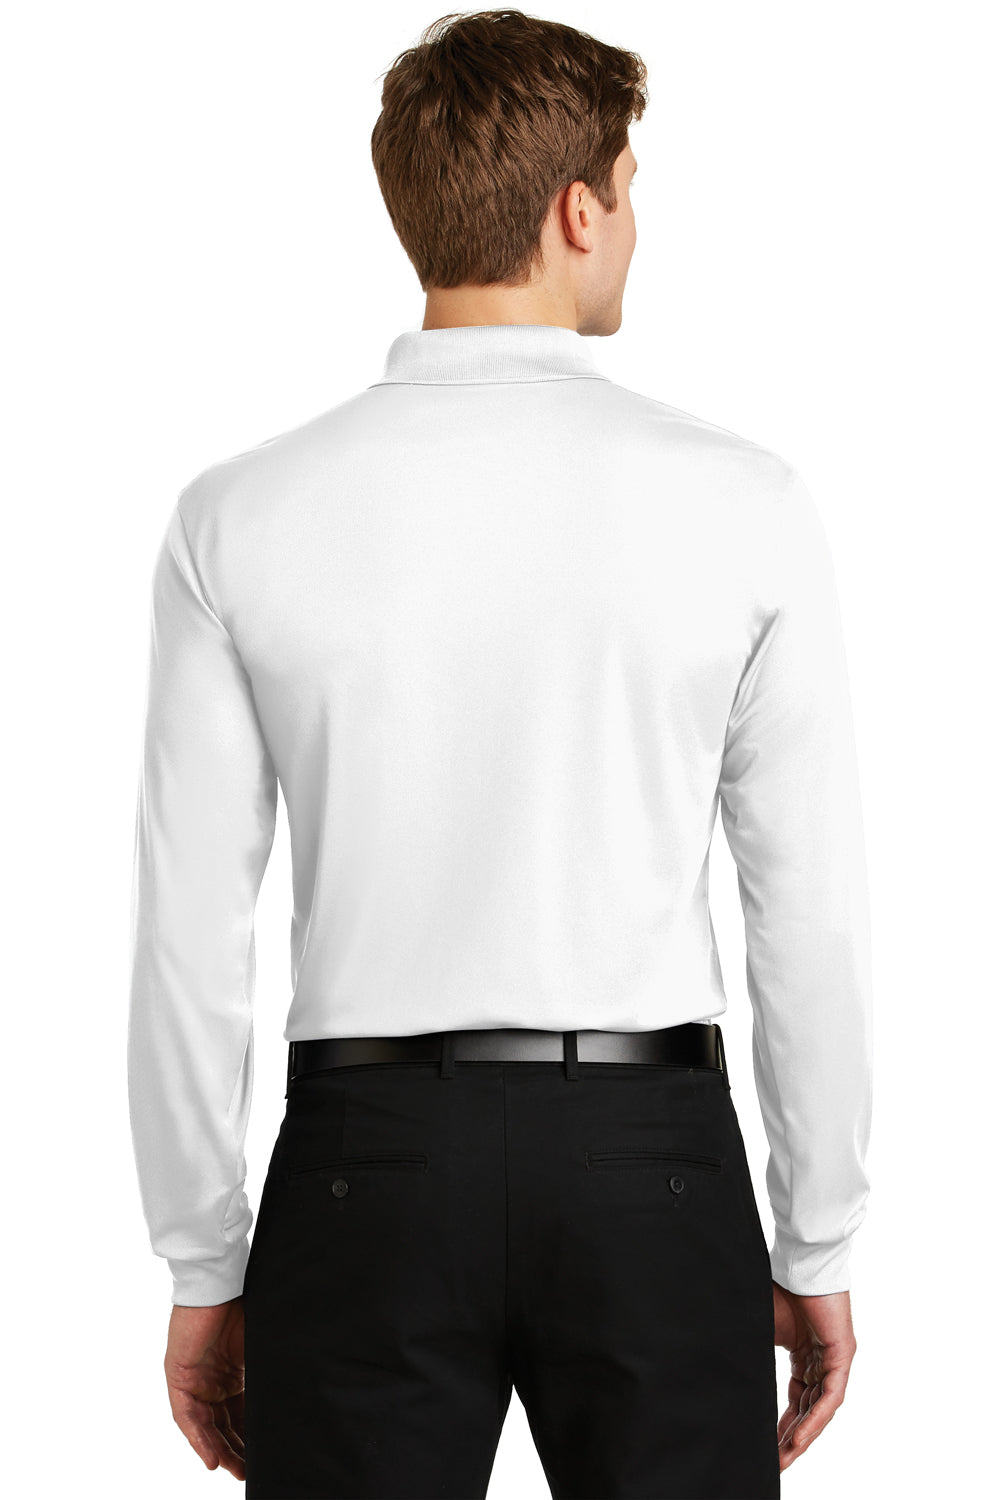 Sport-Tek ST657 Mens Sport-Wick Moisture Wicking Long Sleeve Polo Shirt White Back